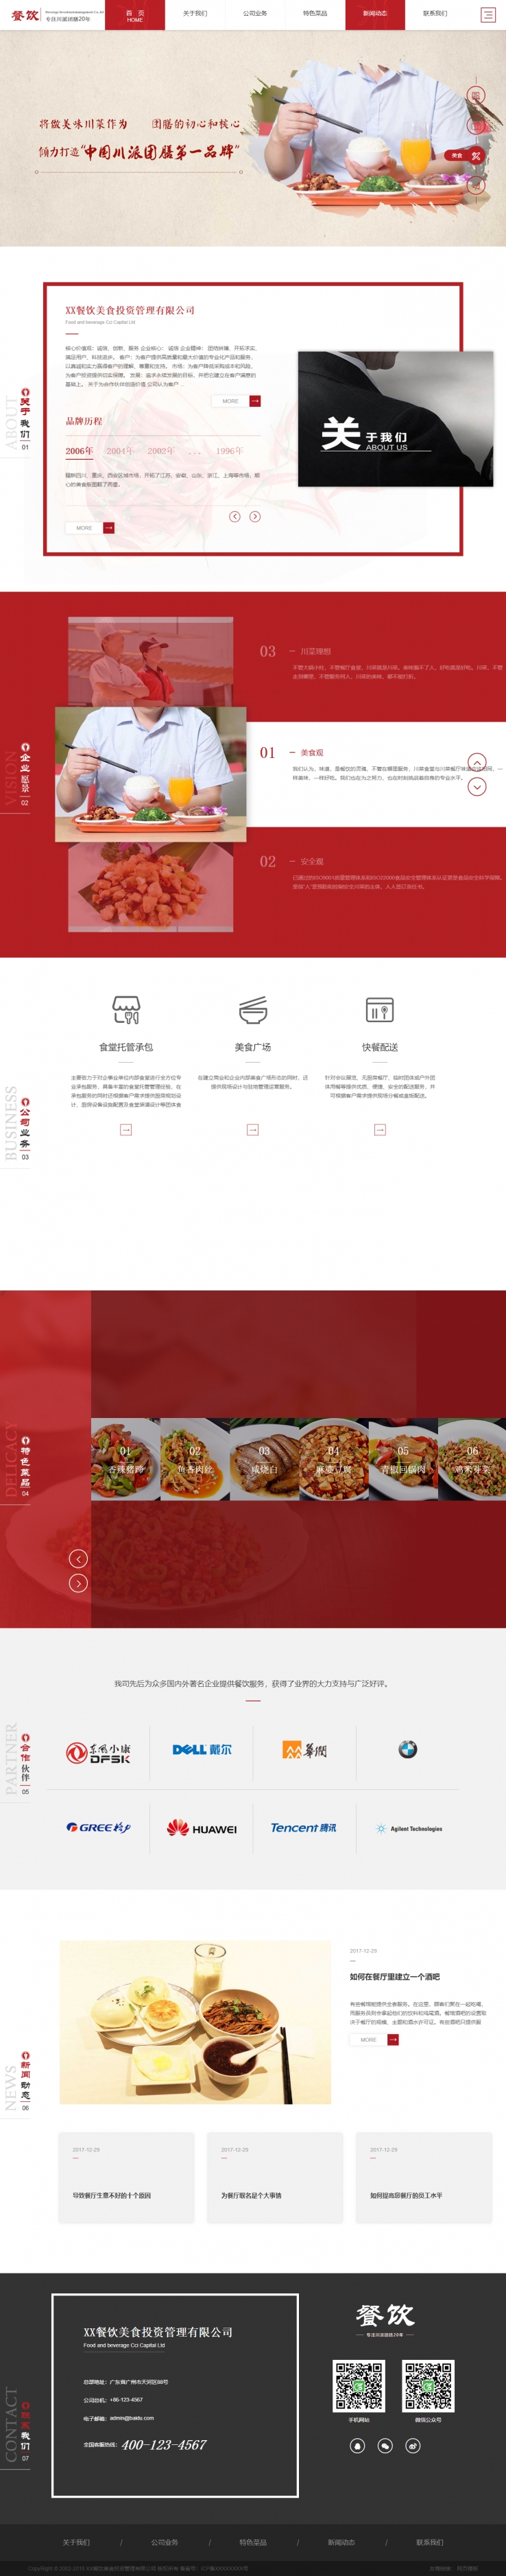 红色大气风格的餐饮投资管理企业网站源码下载